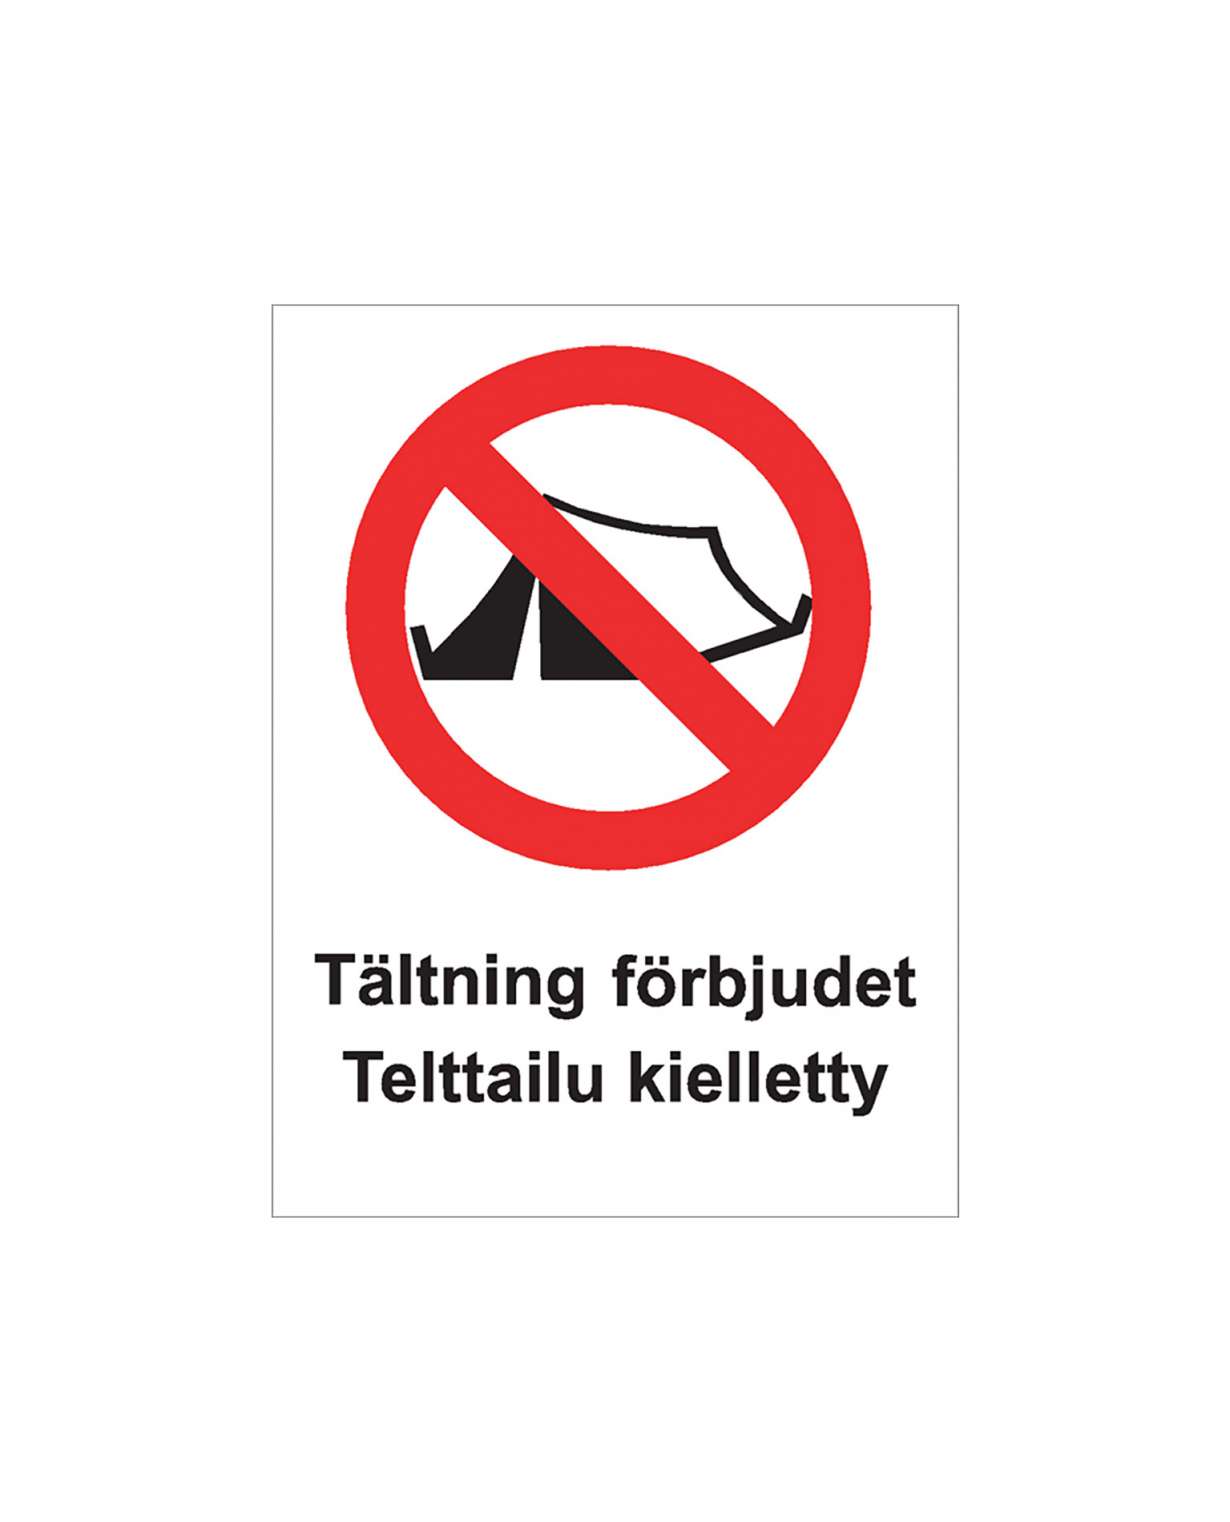 Telttailu kielletty ruotsi, Ibond alumiini, 300x400 mm